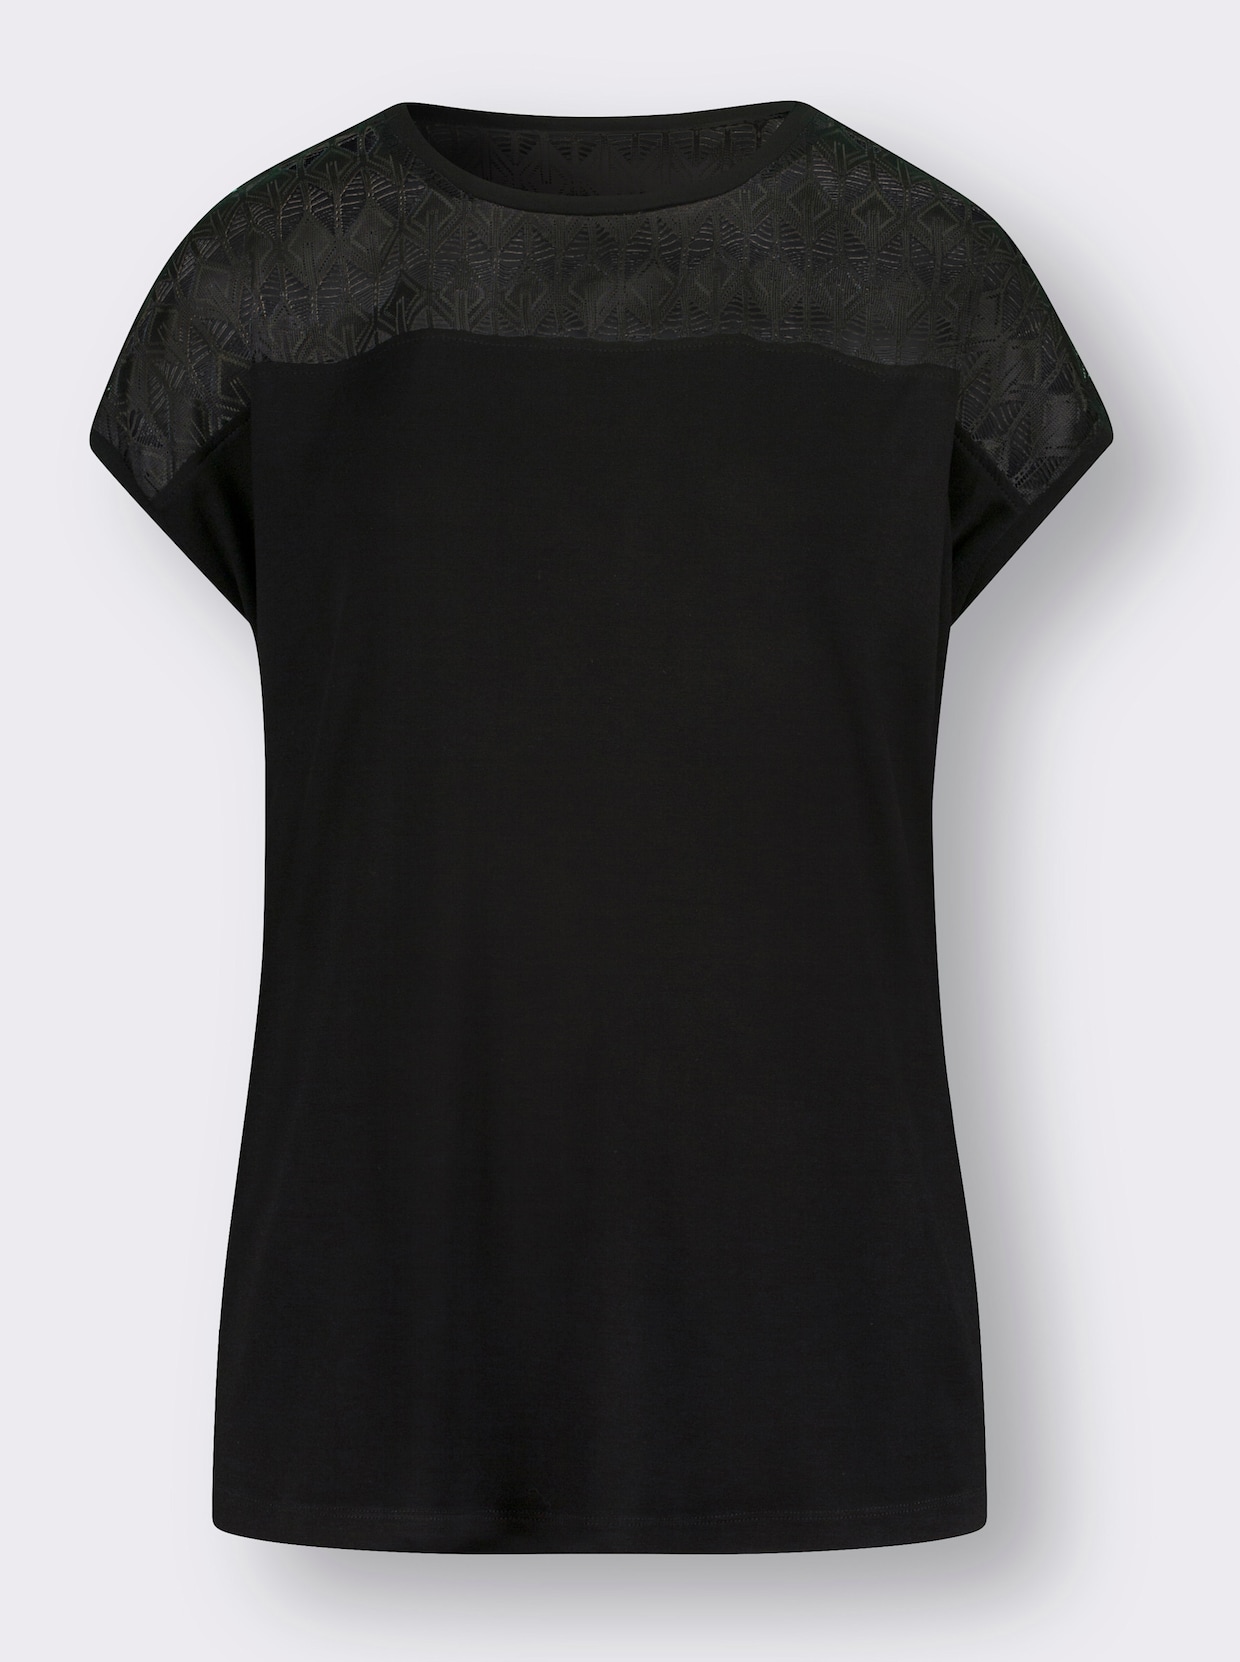 Rundhals-Shirt - schwarz